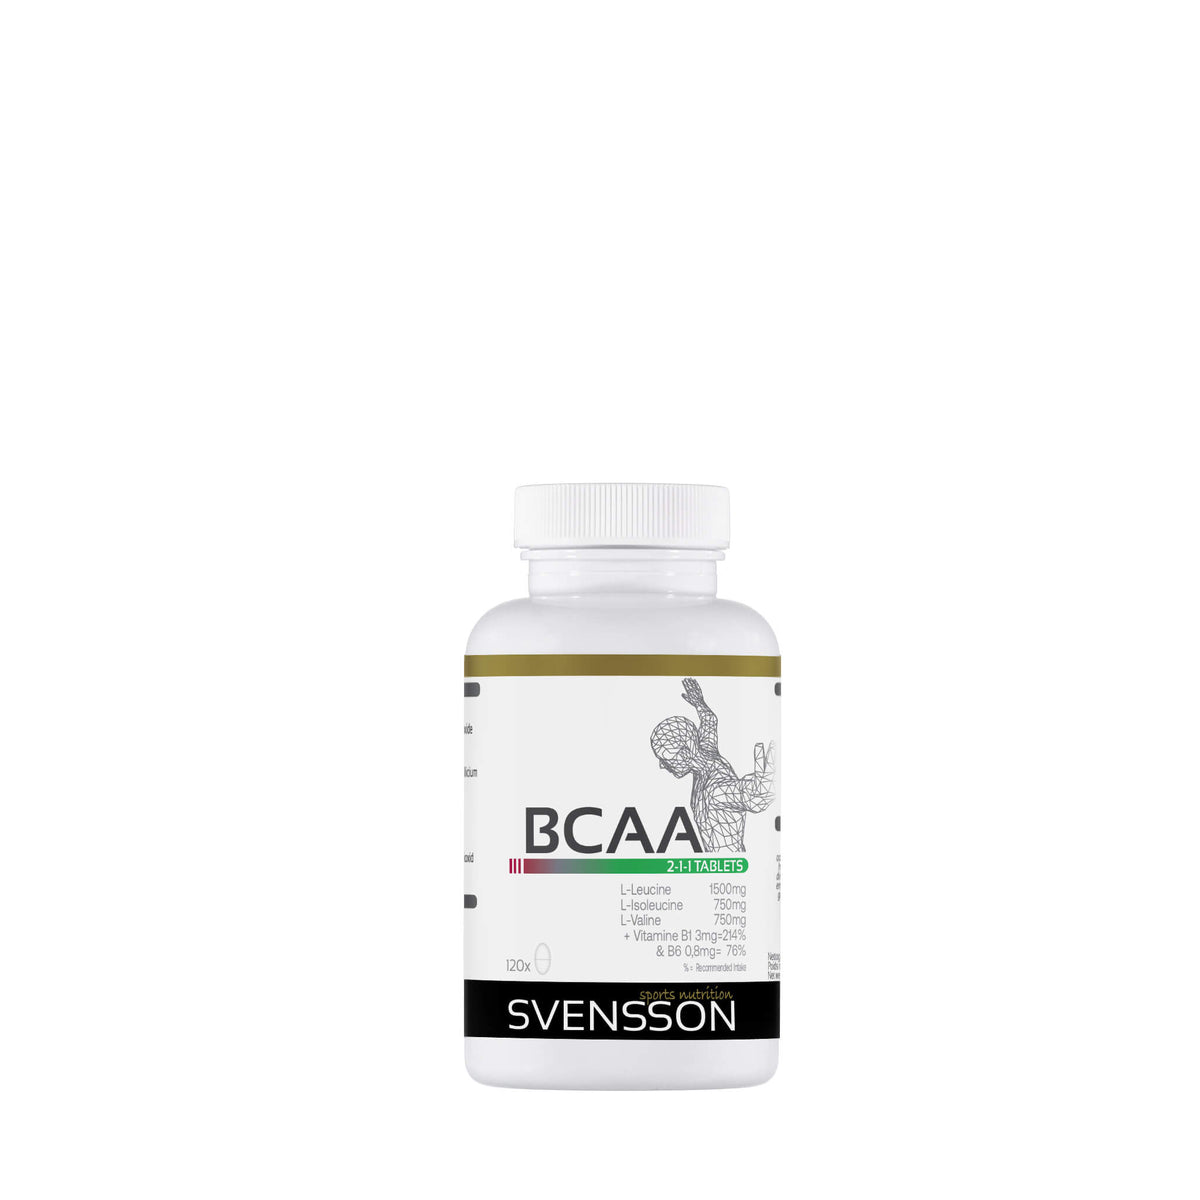 BCAA's in tabletten, essentiële Aminozuren in verhouding 2-1-1 Svensson